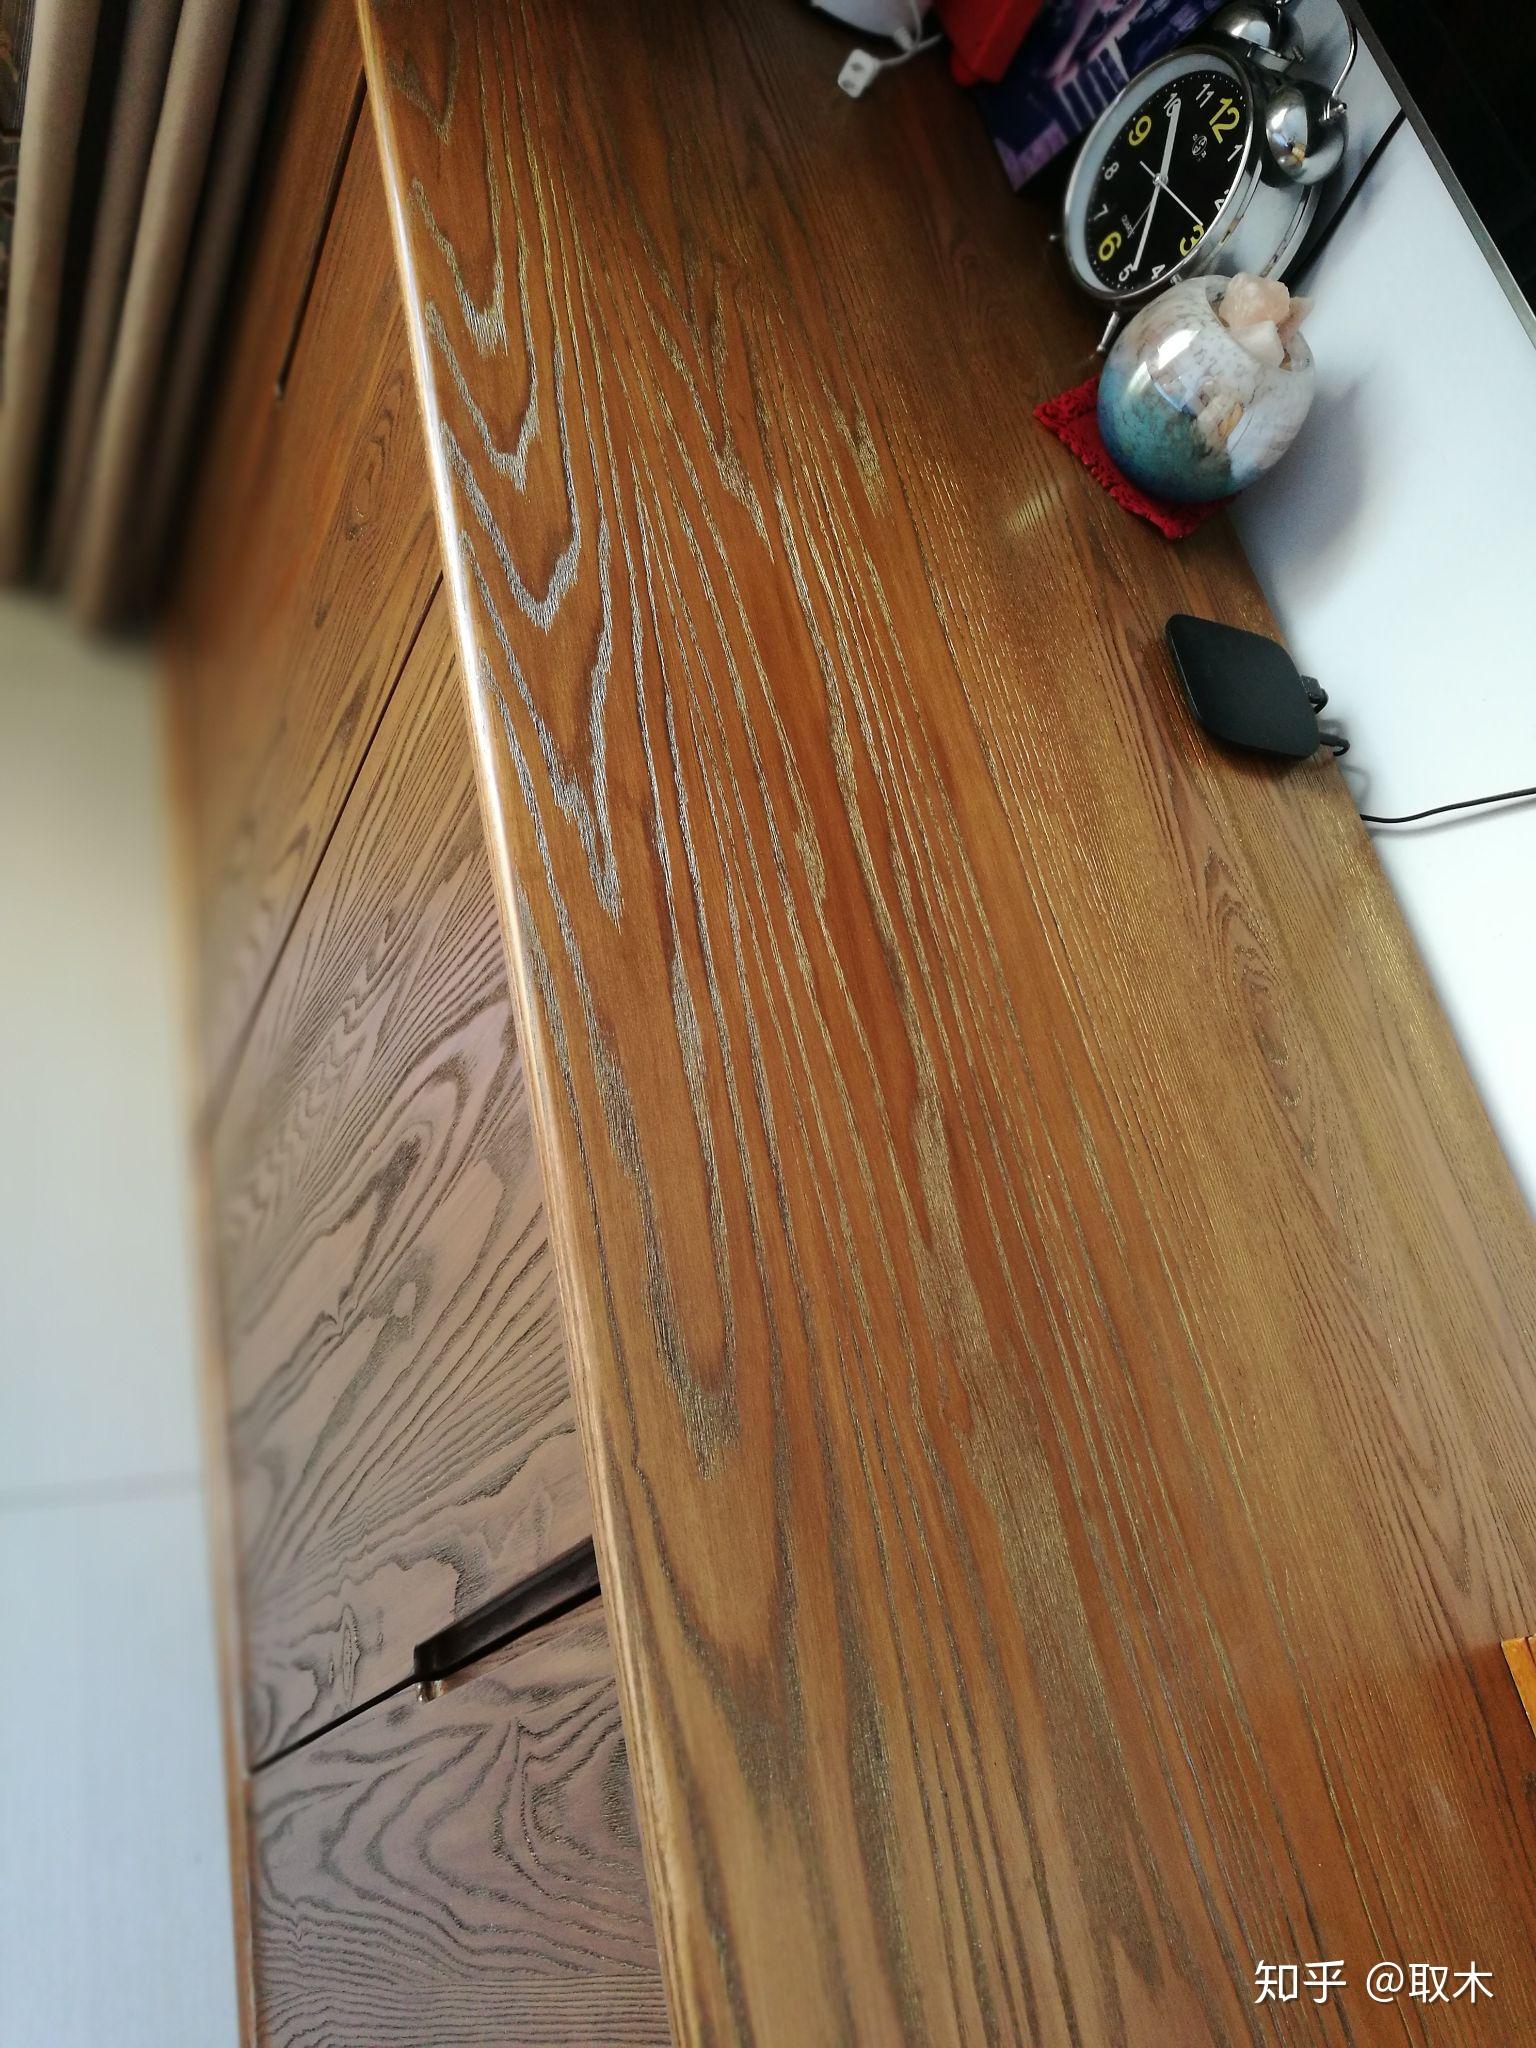 上海思南公馆选用了椽琪的木蜡油地板